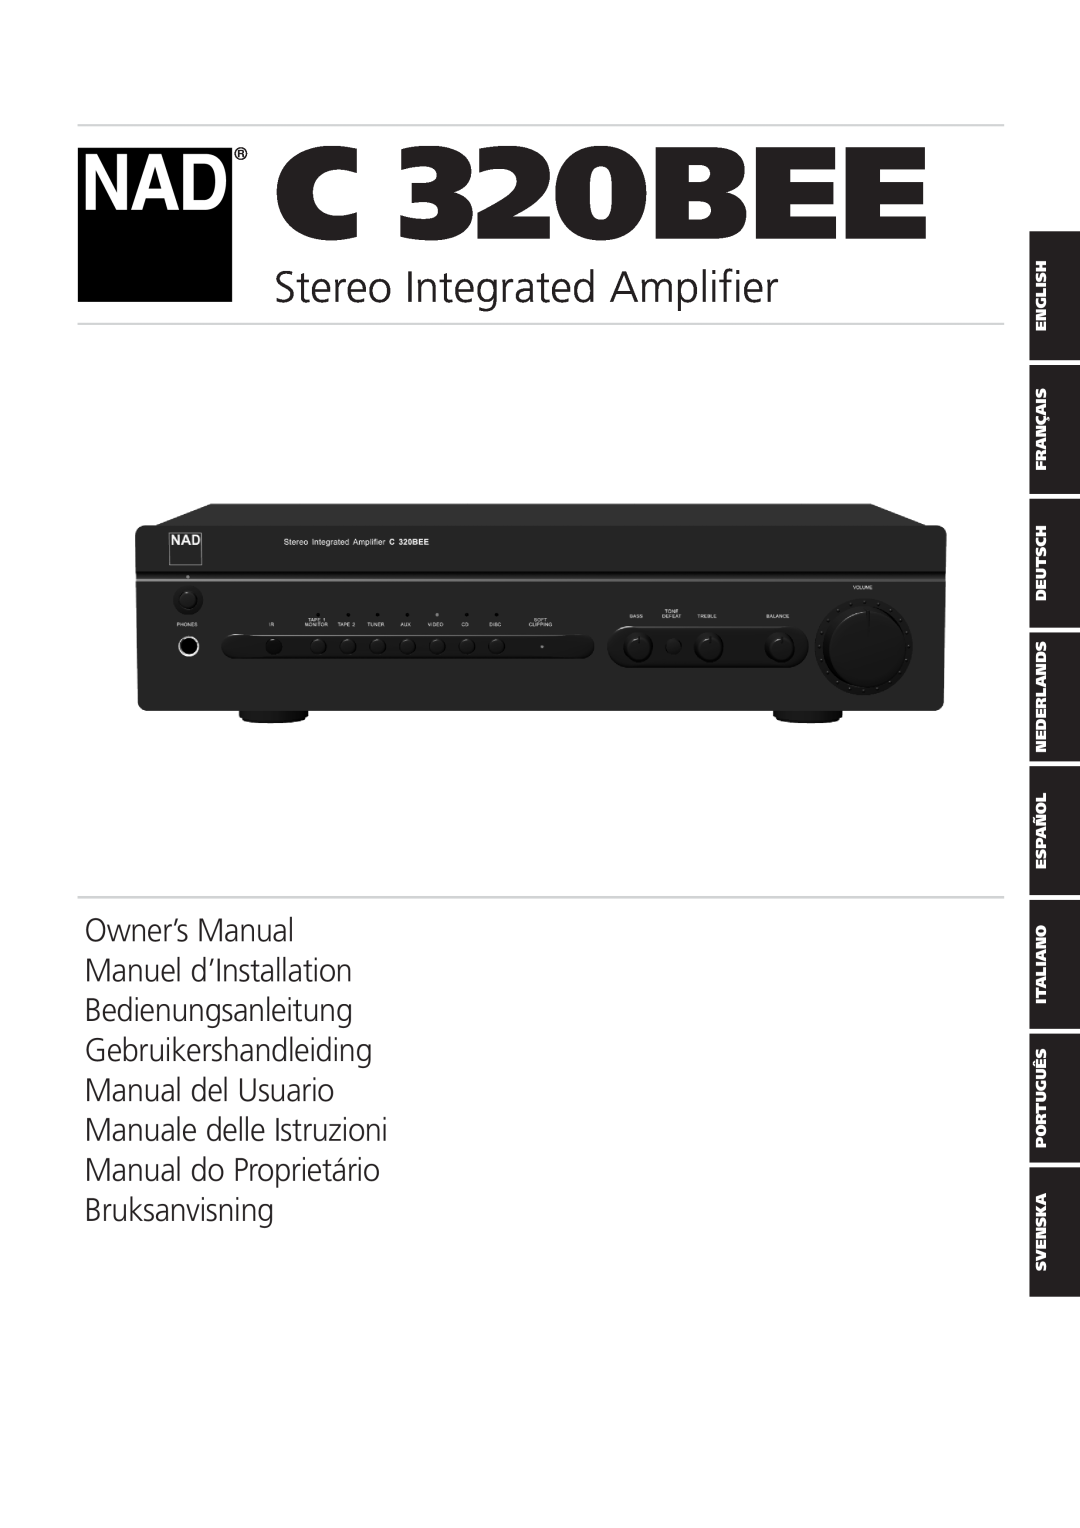 NAD C 320BEE owner manual Stereo Integrated Amplifier, Bedienungsanleitung Gebruikershandleiding 